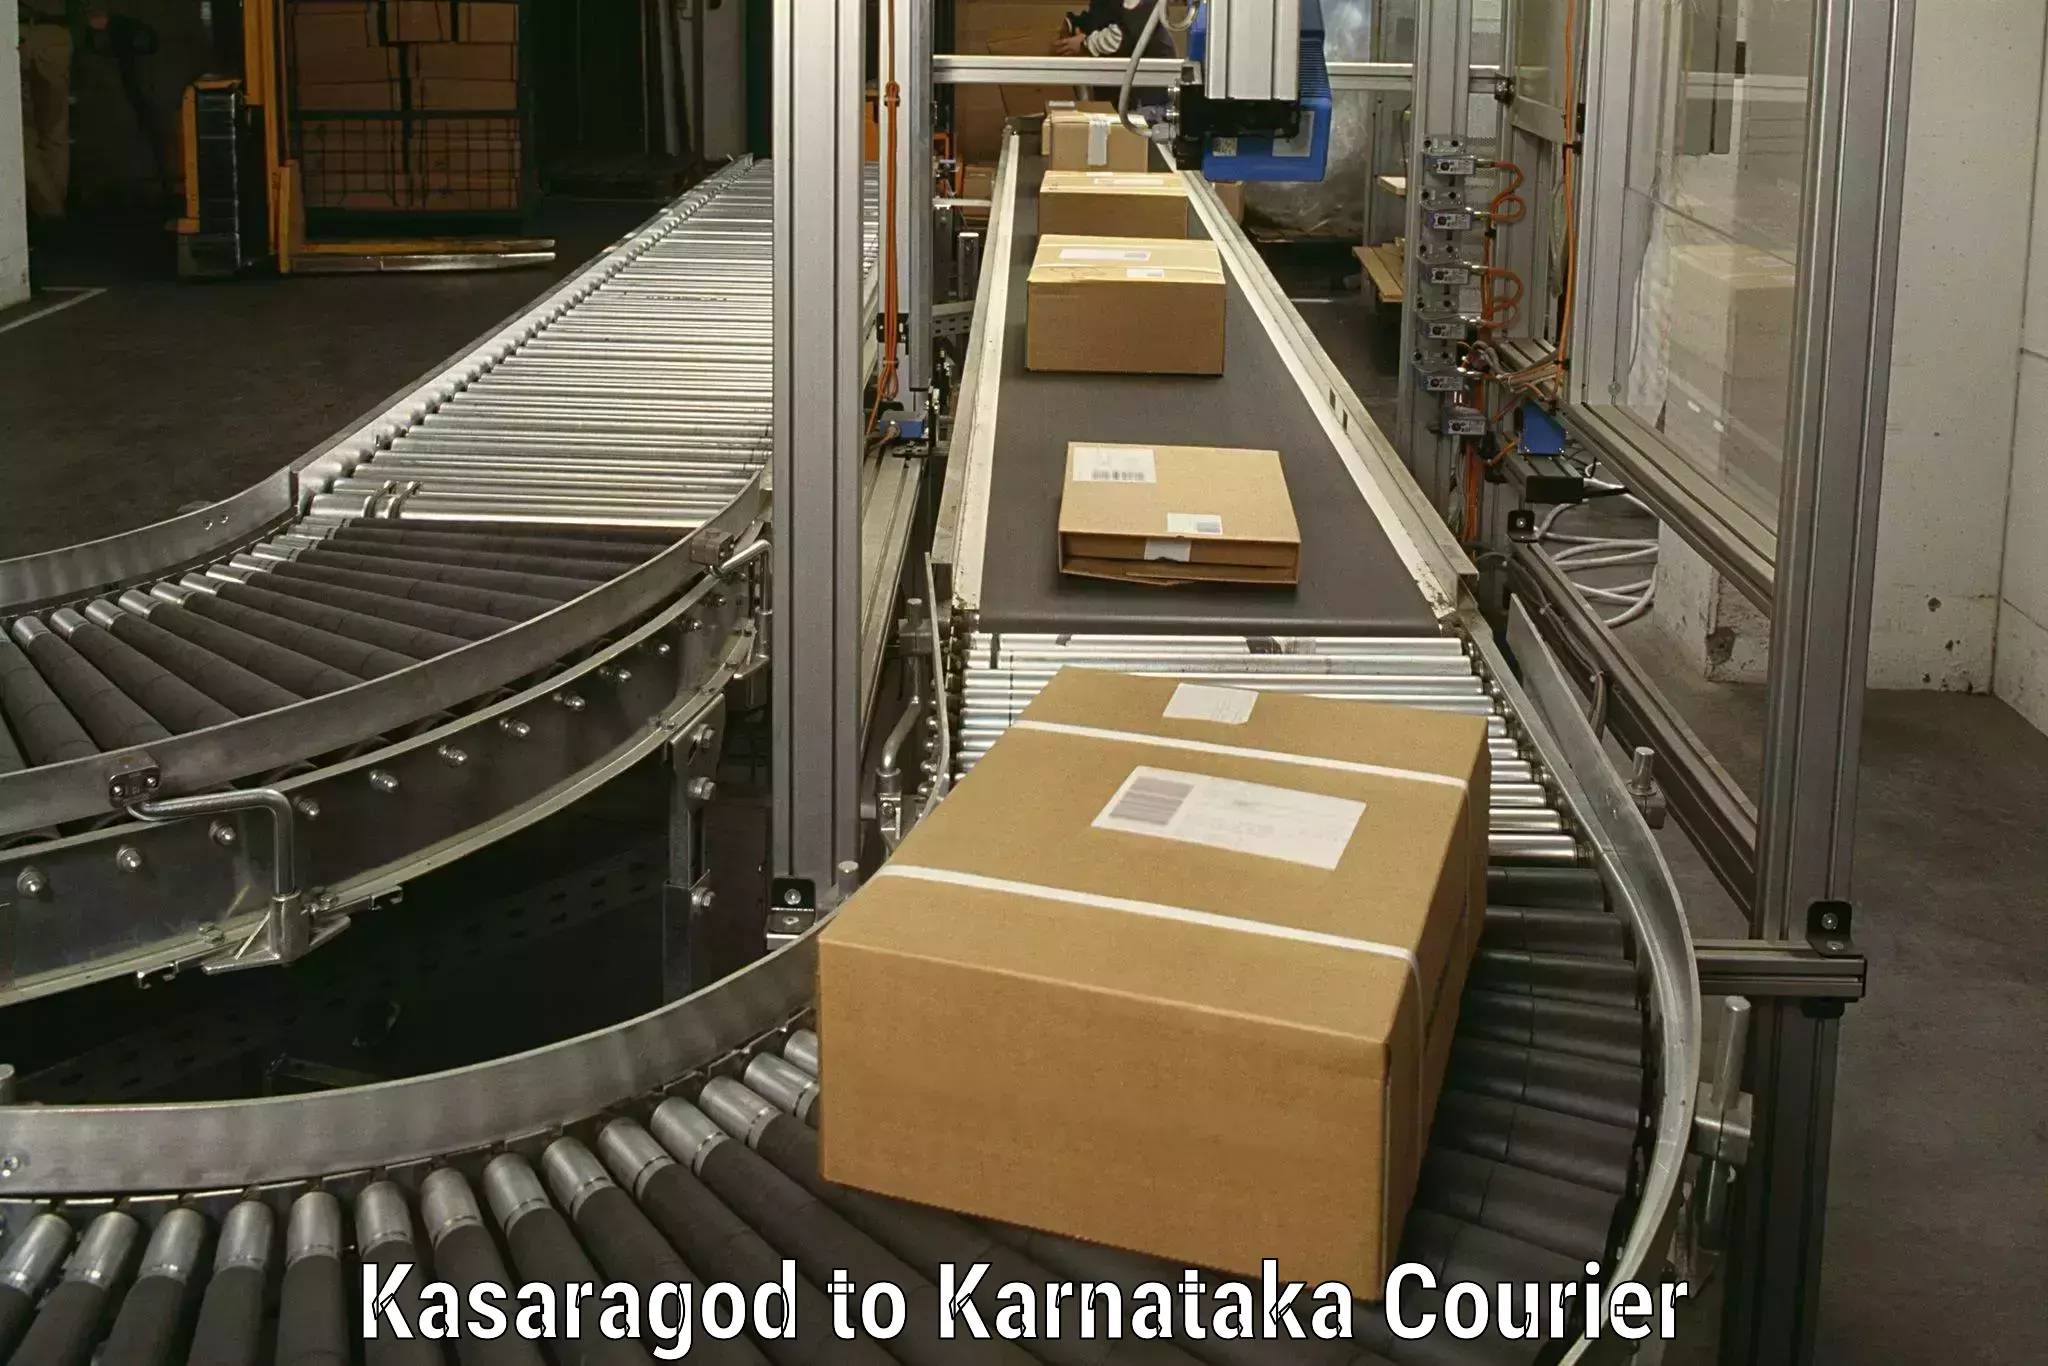 Professional movers Kasaragod to Karnataka